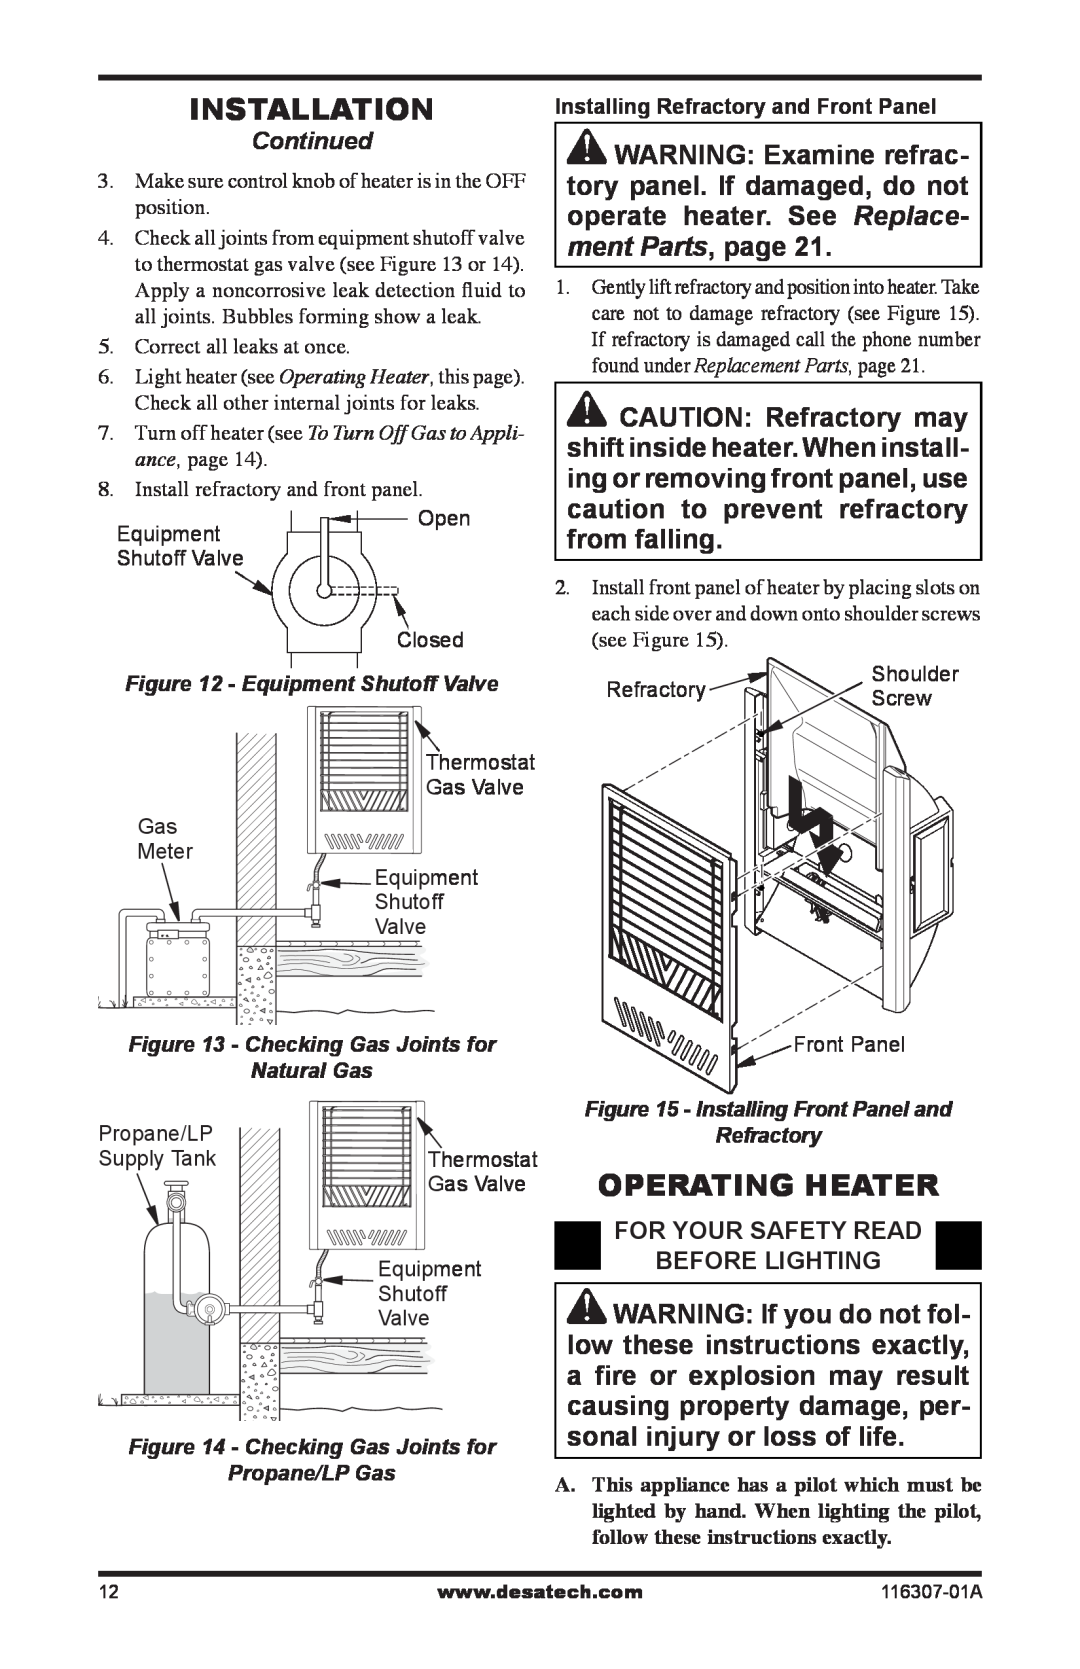 Desa SF20NT installation manual Installation, Operating Heater 